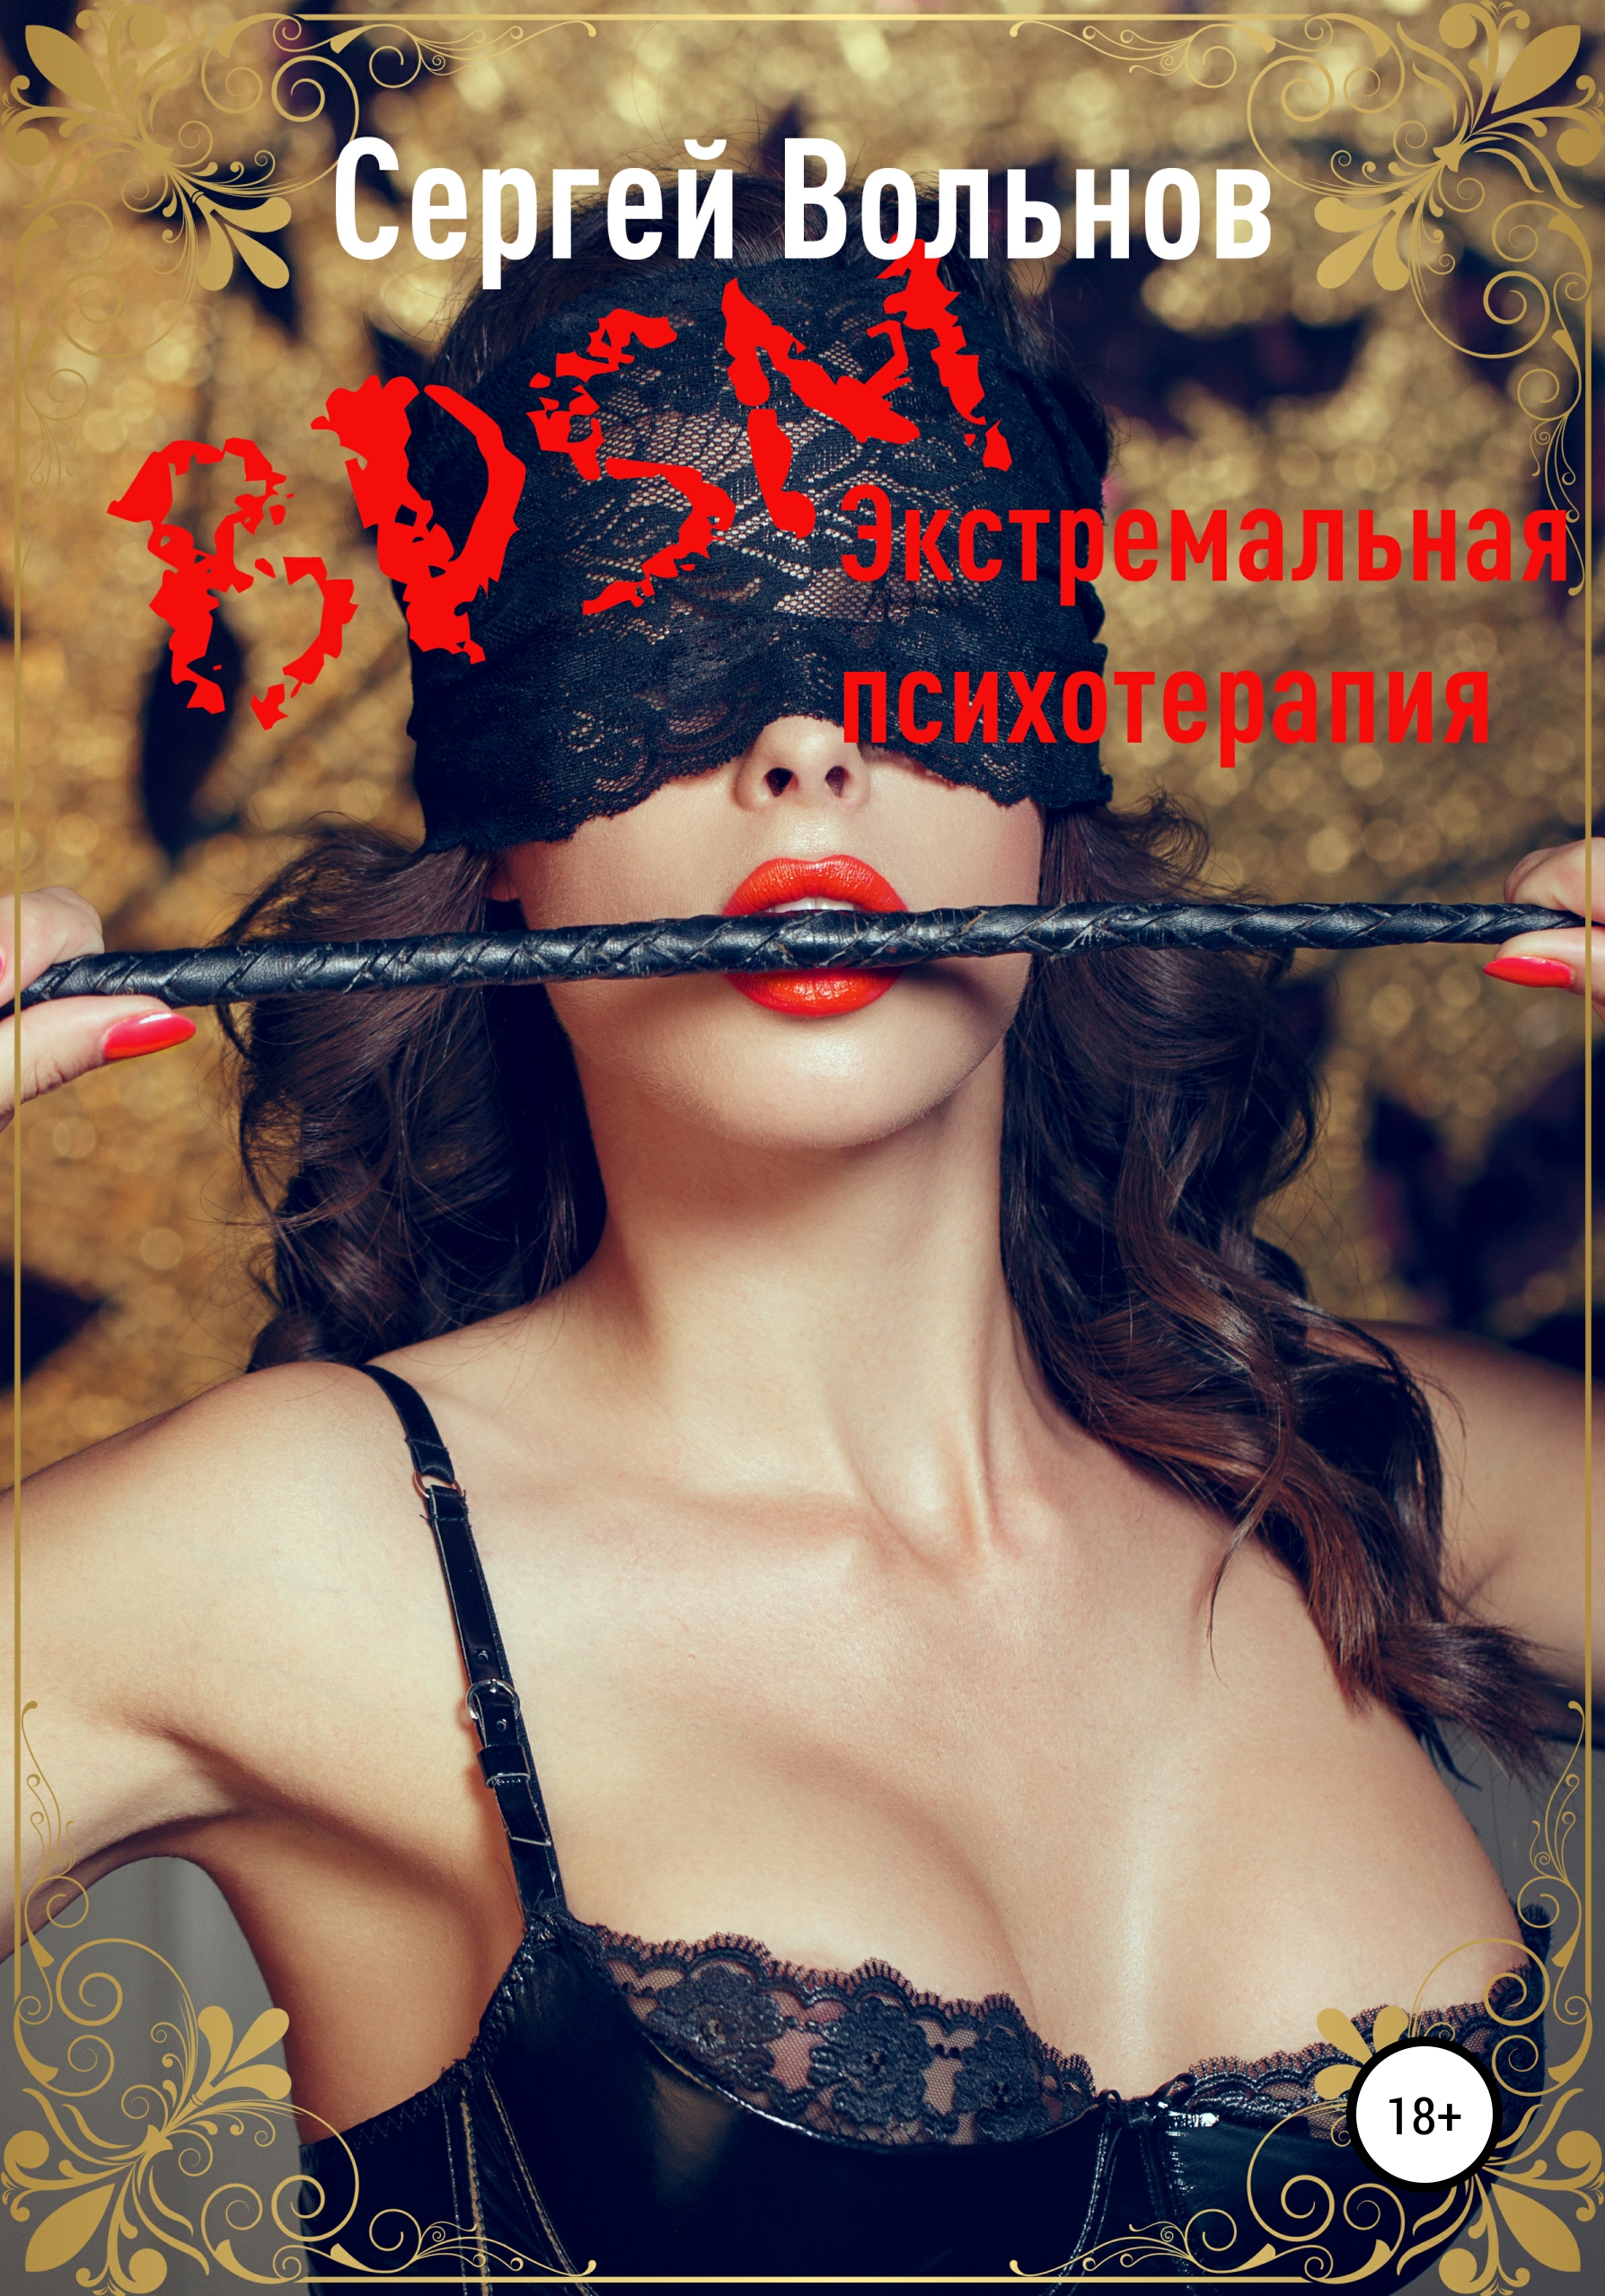 BDSM – экстремальная психотерапия, , Сергей Вольнов – скачать книгу  бесплатно fb2, epub, pdf на ЛитРес